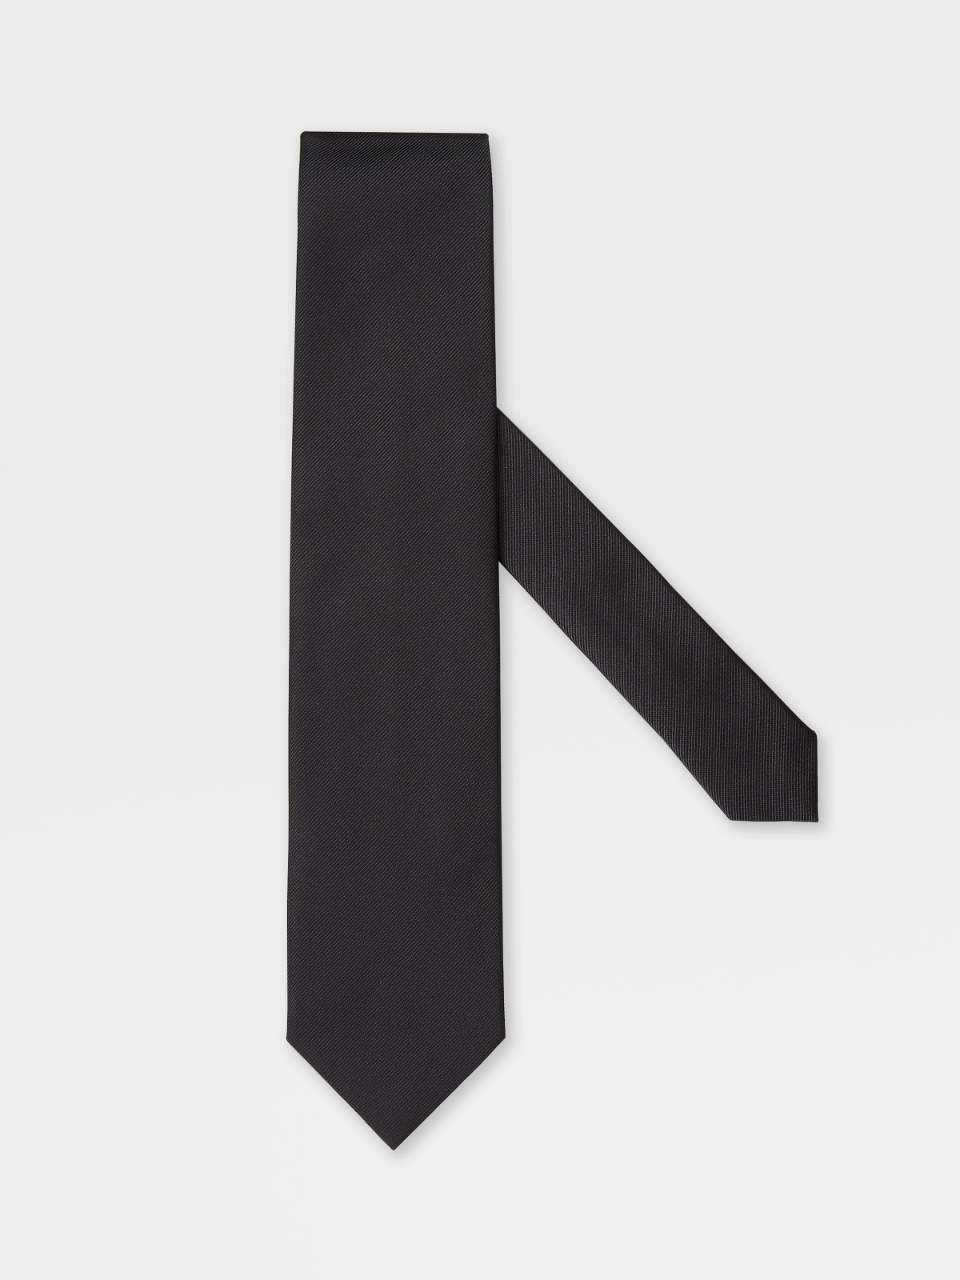 Matt Black Silk Tie